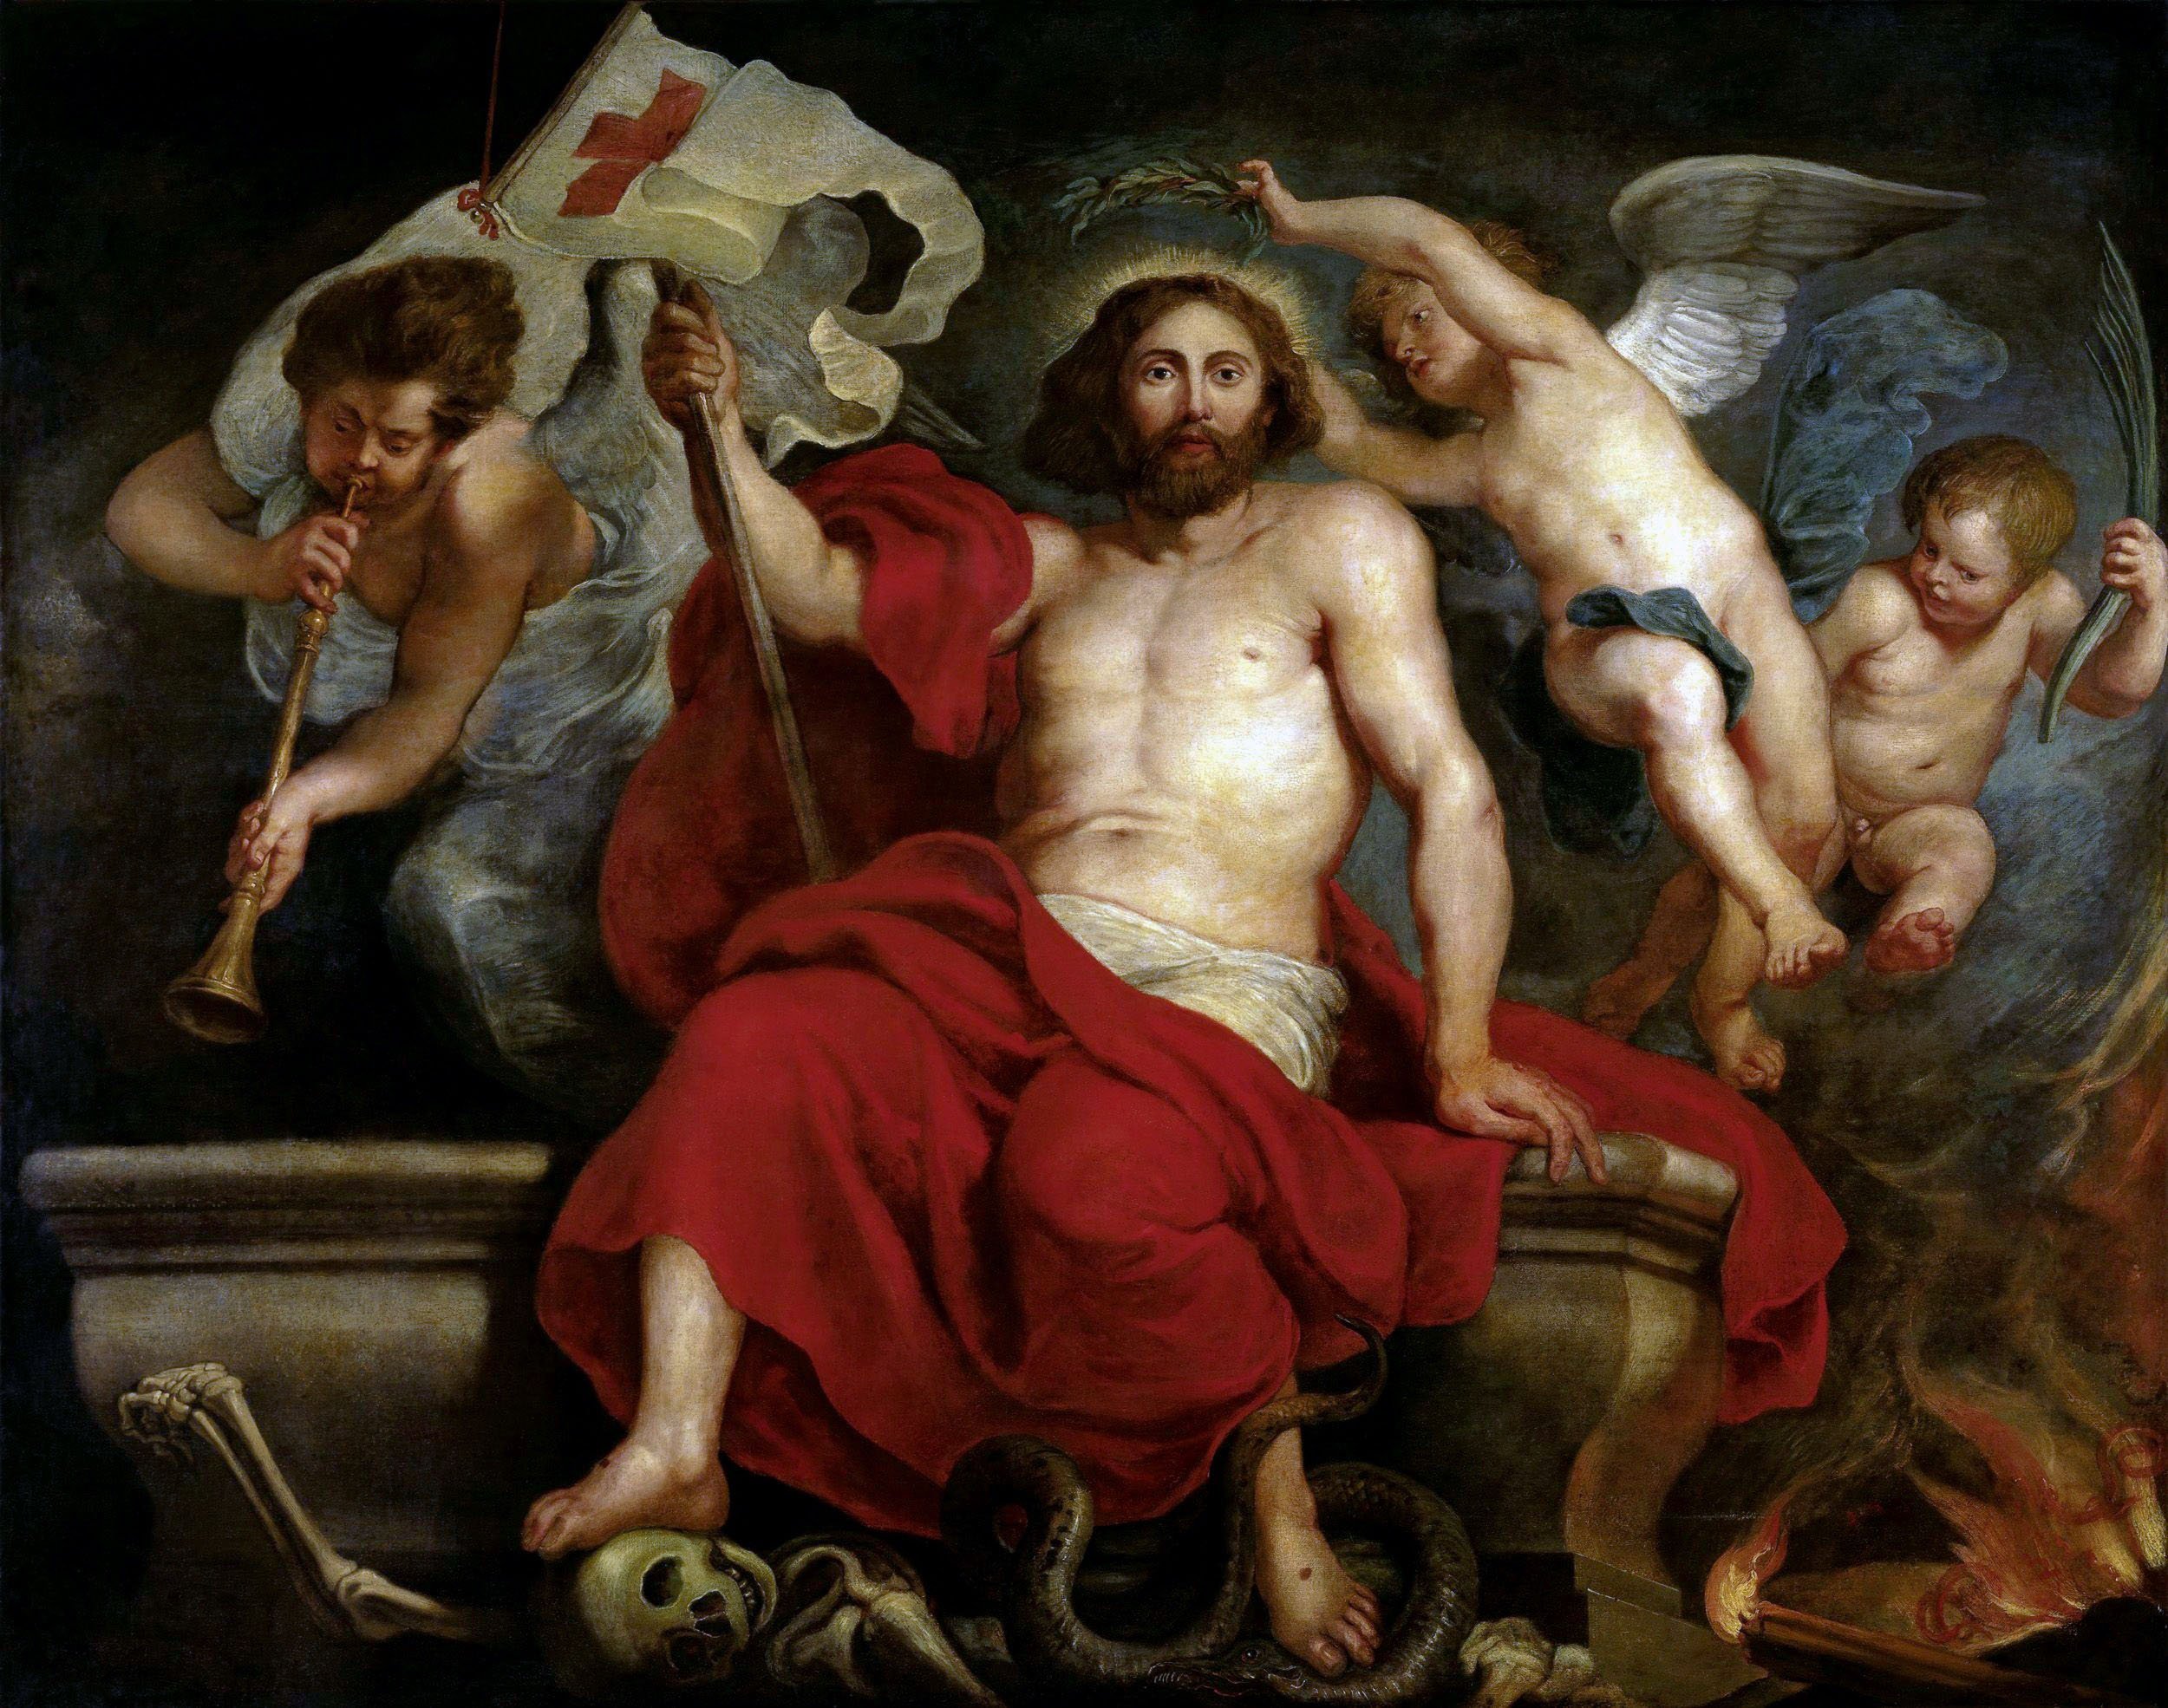 Питер Пауль Рубенс. "Торжество Христа над грехом и смертью". 1615-1622. Музей Лихтенштейн, Вена.